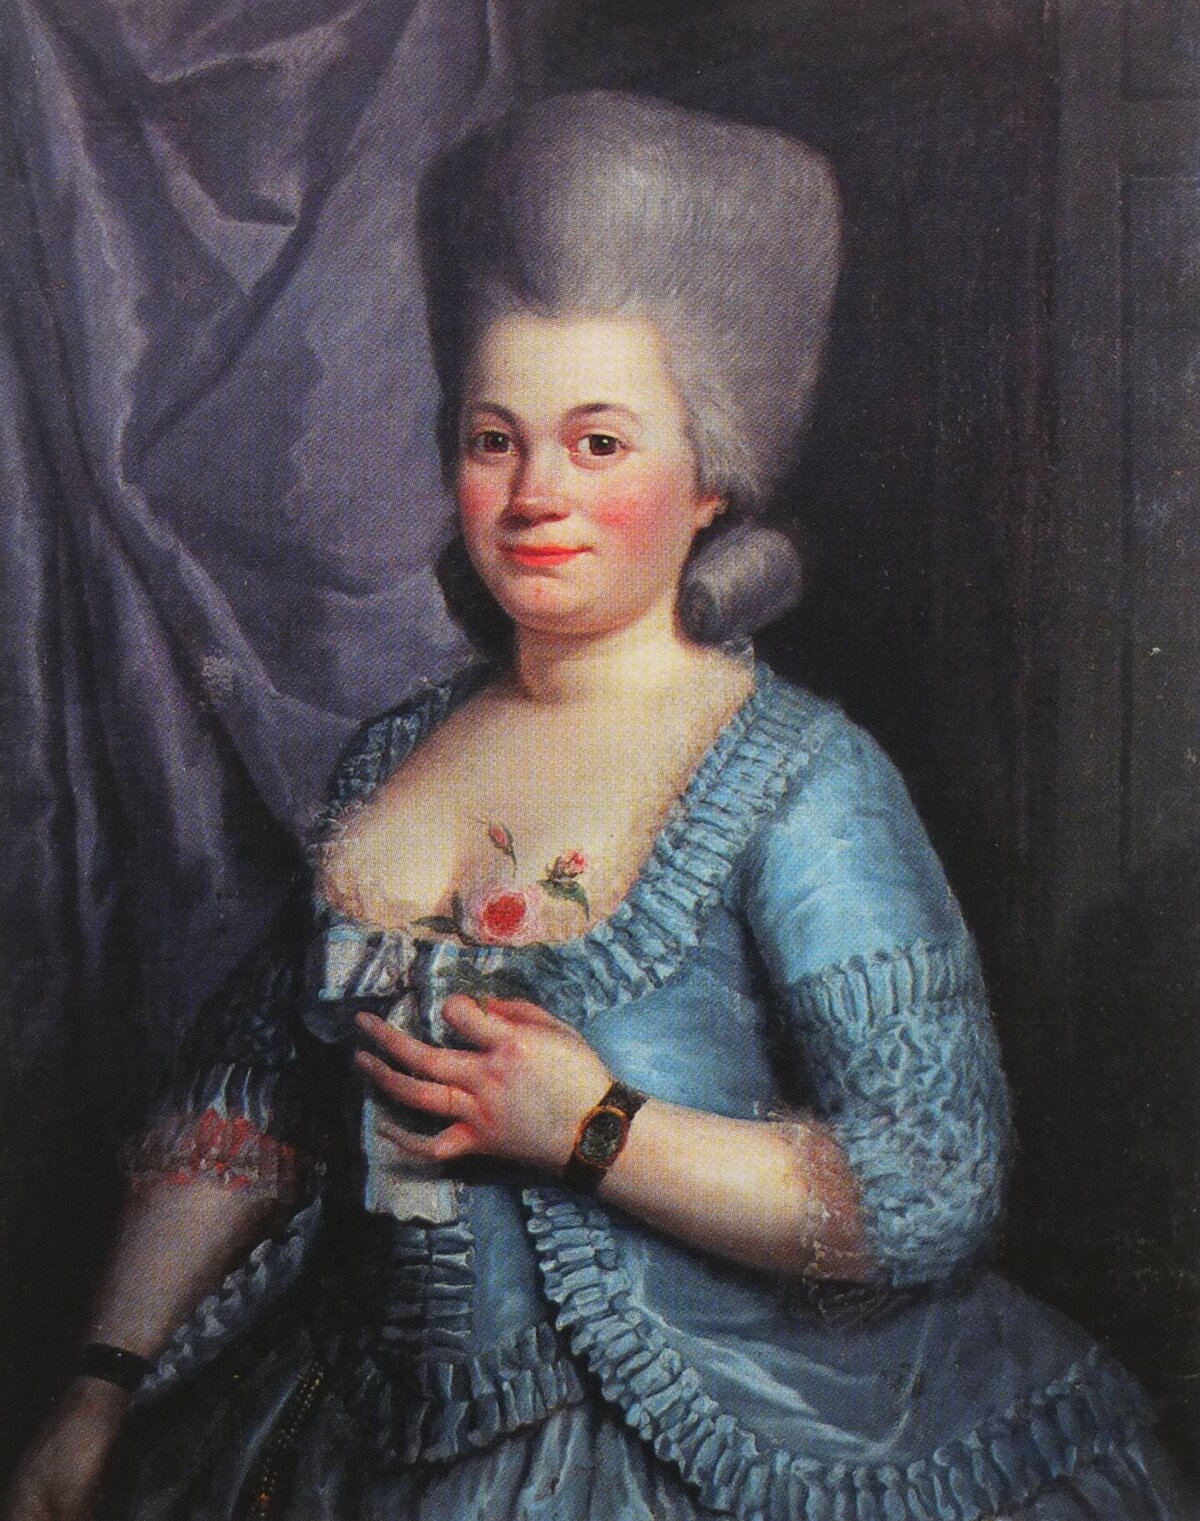 Rose Bertin (1747-1813) volt. Marie Jeanne "Rose" Bertin közember volt, akit Marie Antoinette az első számú divatstylistává és öltöztetőjévé neveztetett ki a versailles-i udvarban.